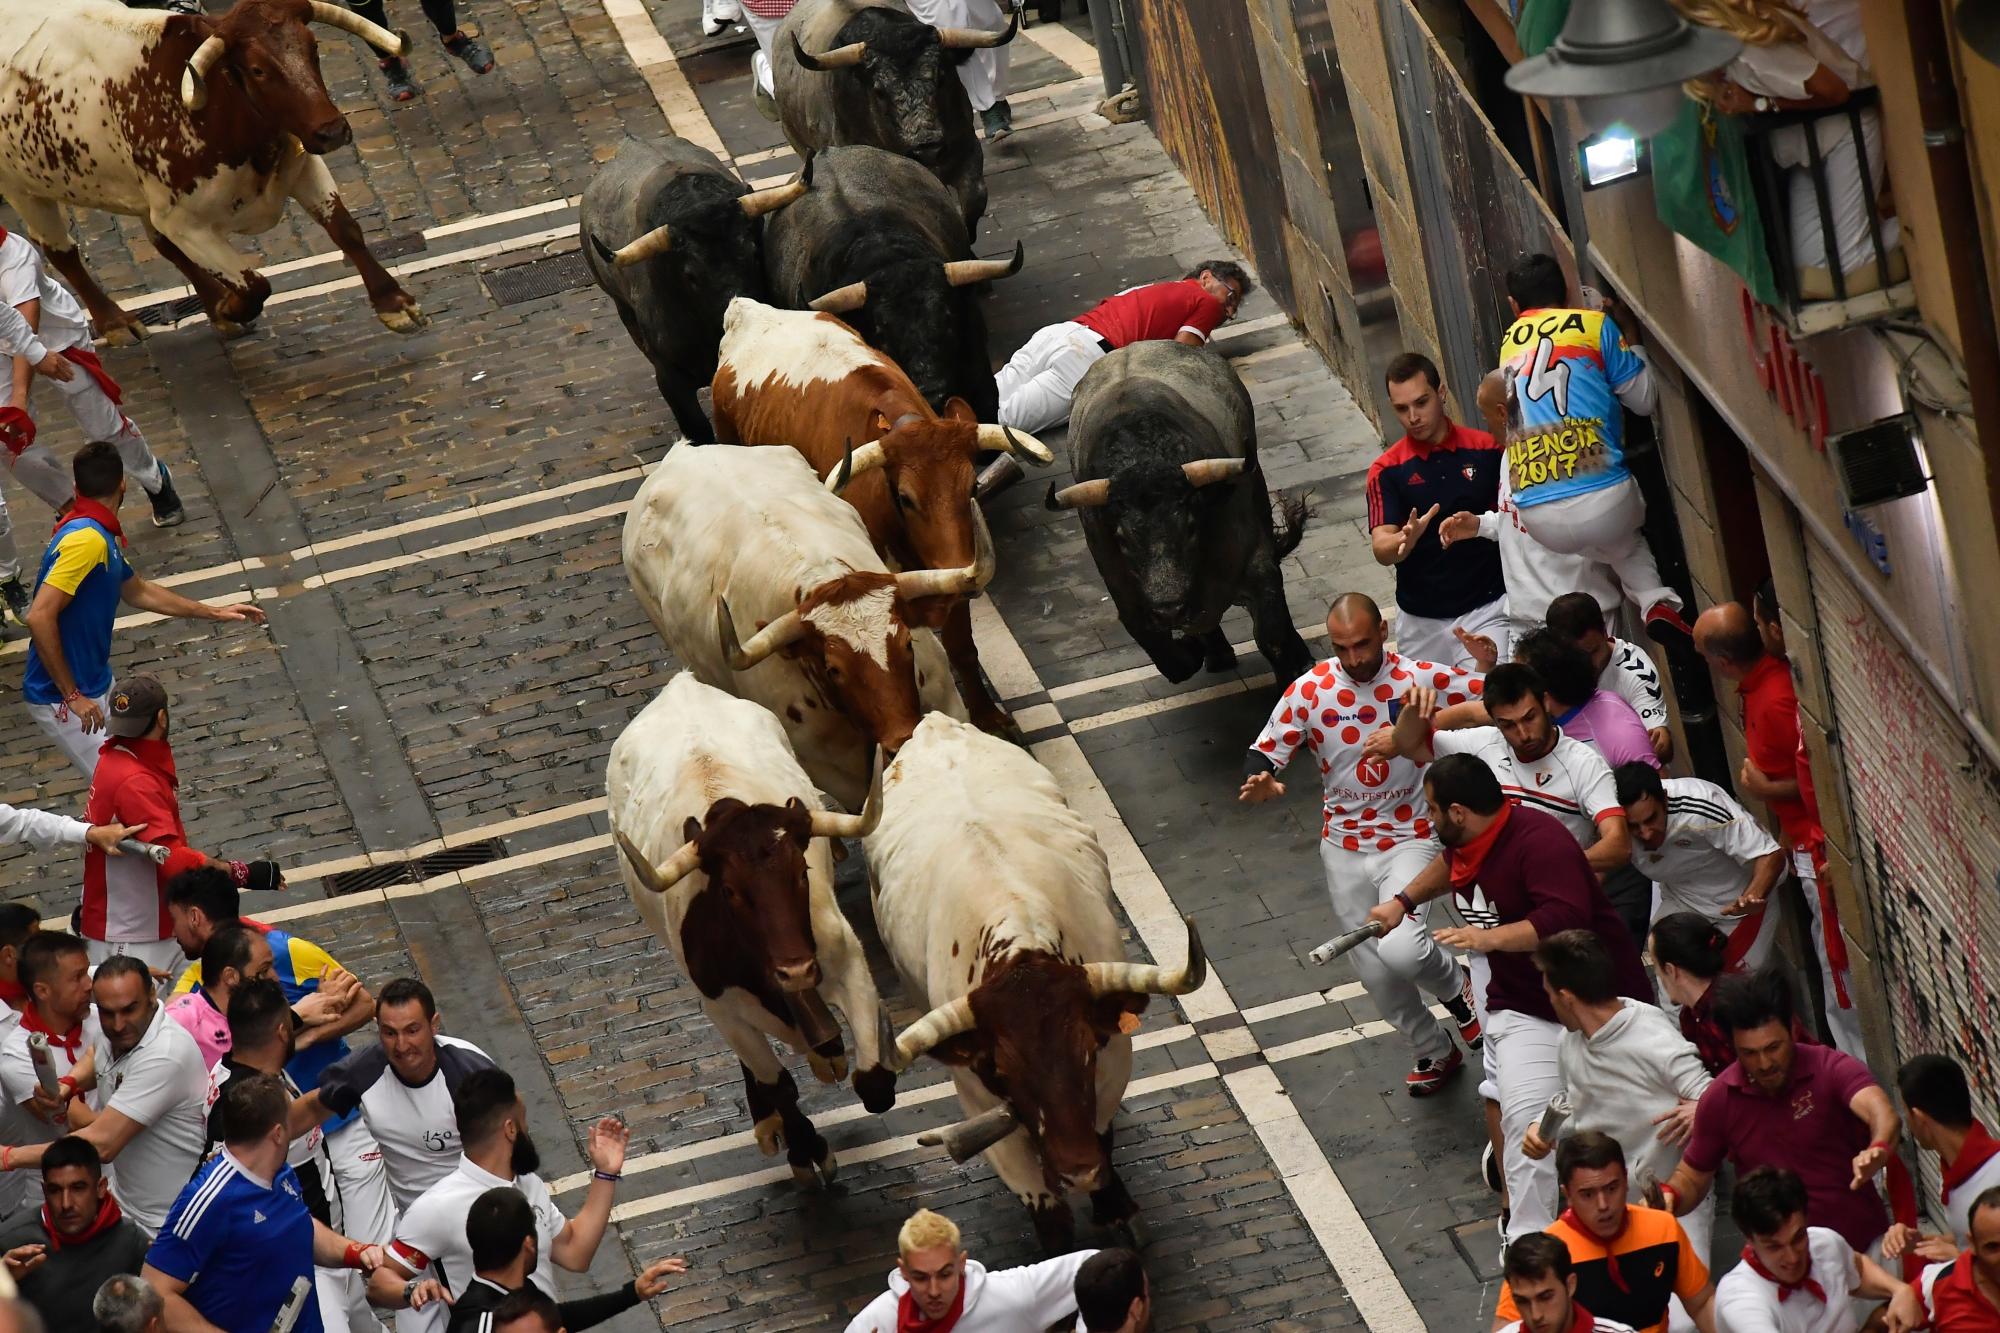 Los juerguistas corren al lado de los toros de toros durante la corrida de los toros en el Festival de San Fermín, en Pamplona, norte de España, el martes 9 de julio de 2019. Los juerguistas de todo el mundo acuden a Pamplona cada año para participar en los ocho días del corrida de toros.